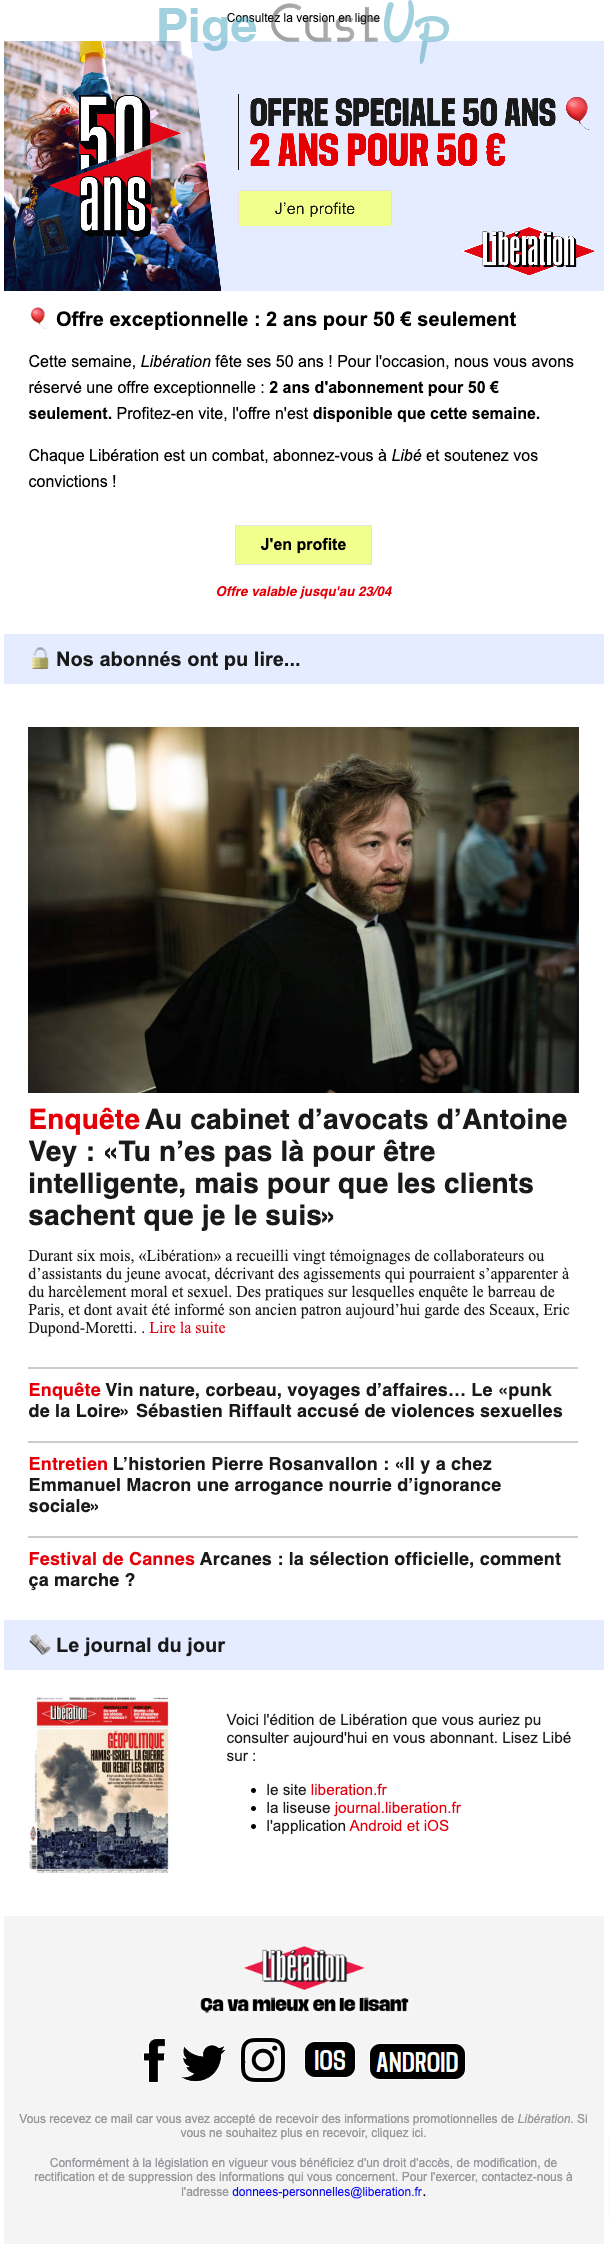 Exemple de Type de media  e-mailing - Libération - Marketing Acquisition - Acquisition abonnements - Marketing marque - Anniversaire marque